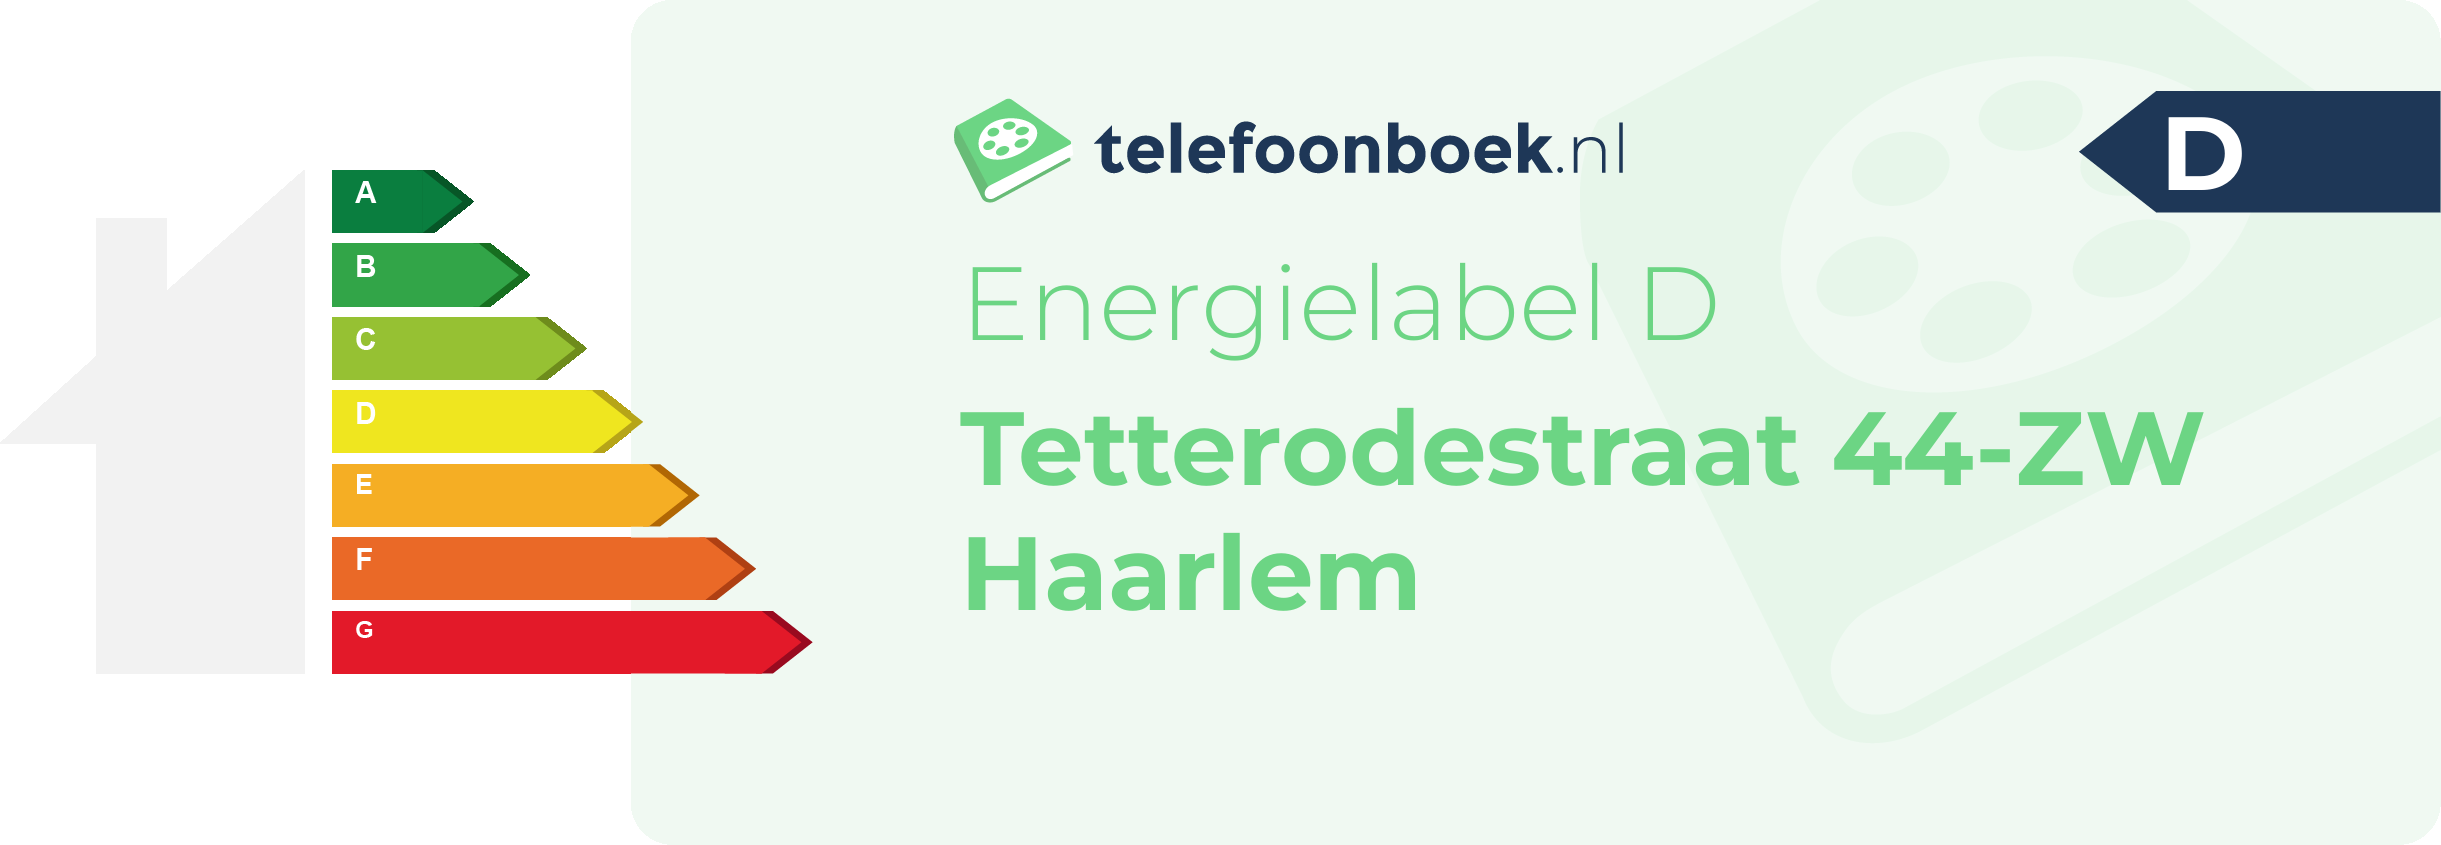 Energielabel Tetterodestraat 44-ZW Haarlem